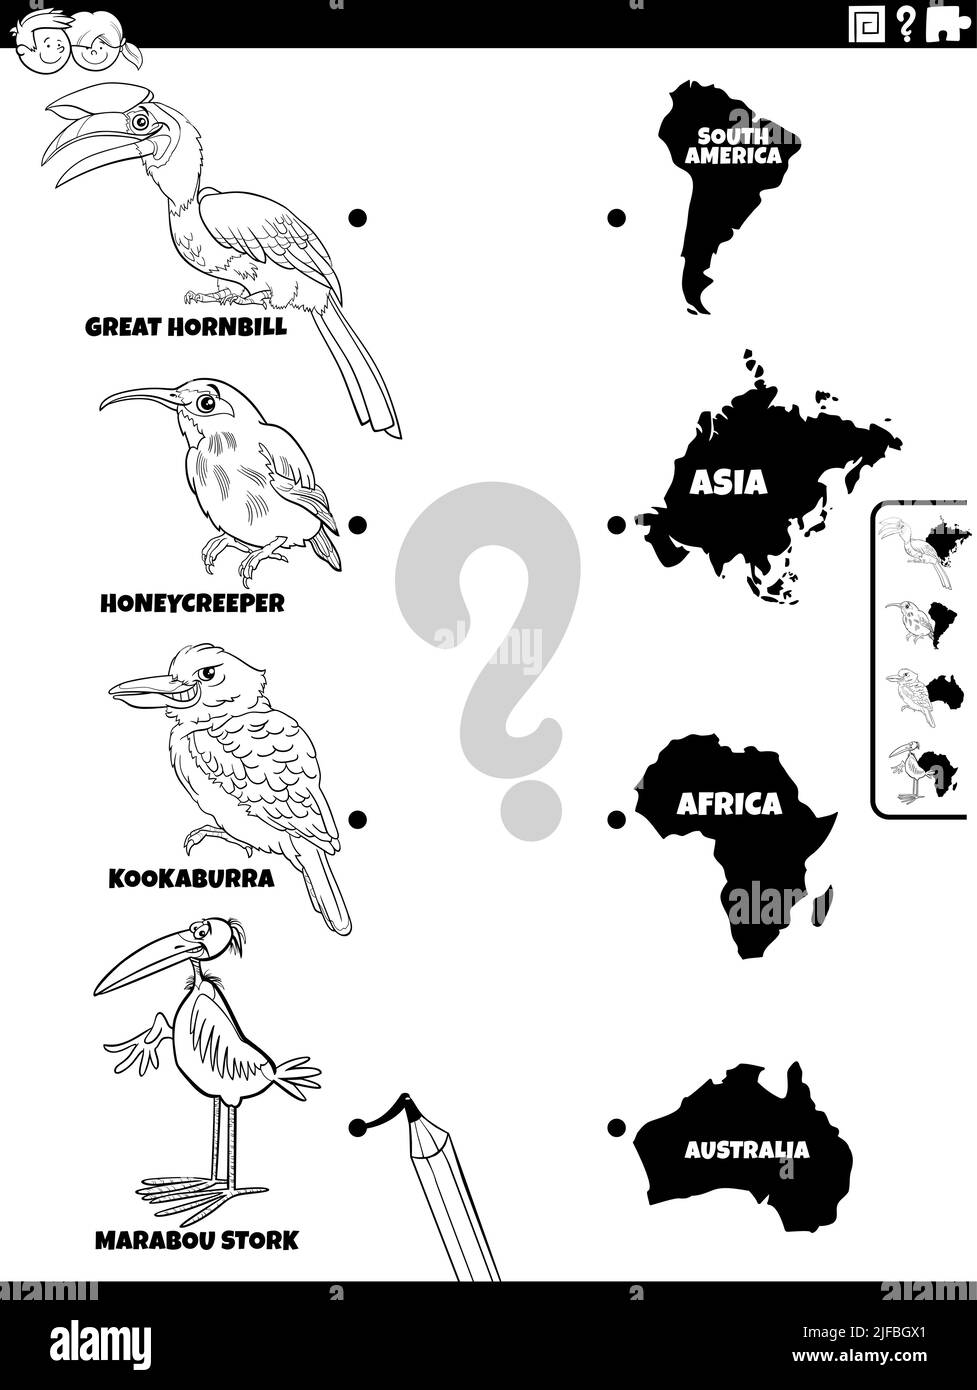 Schwarz-Weiß-Cartoon-Illustration der pädagogischen Matching-Aufgabe mit Vögeln Tierarten Zeichen und Kontinente Färbung Seite Stock Vektor